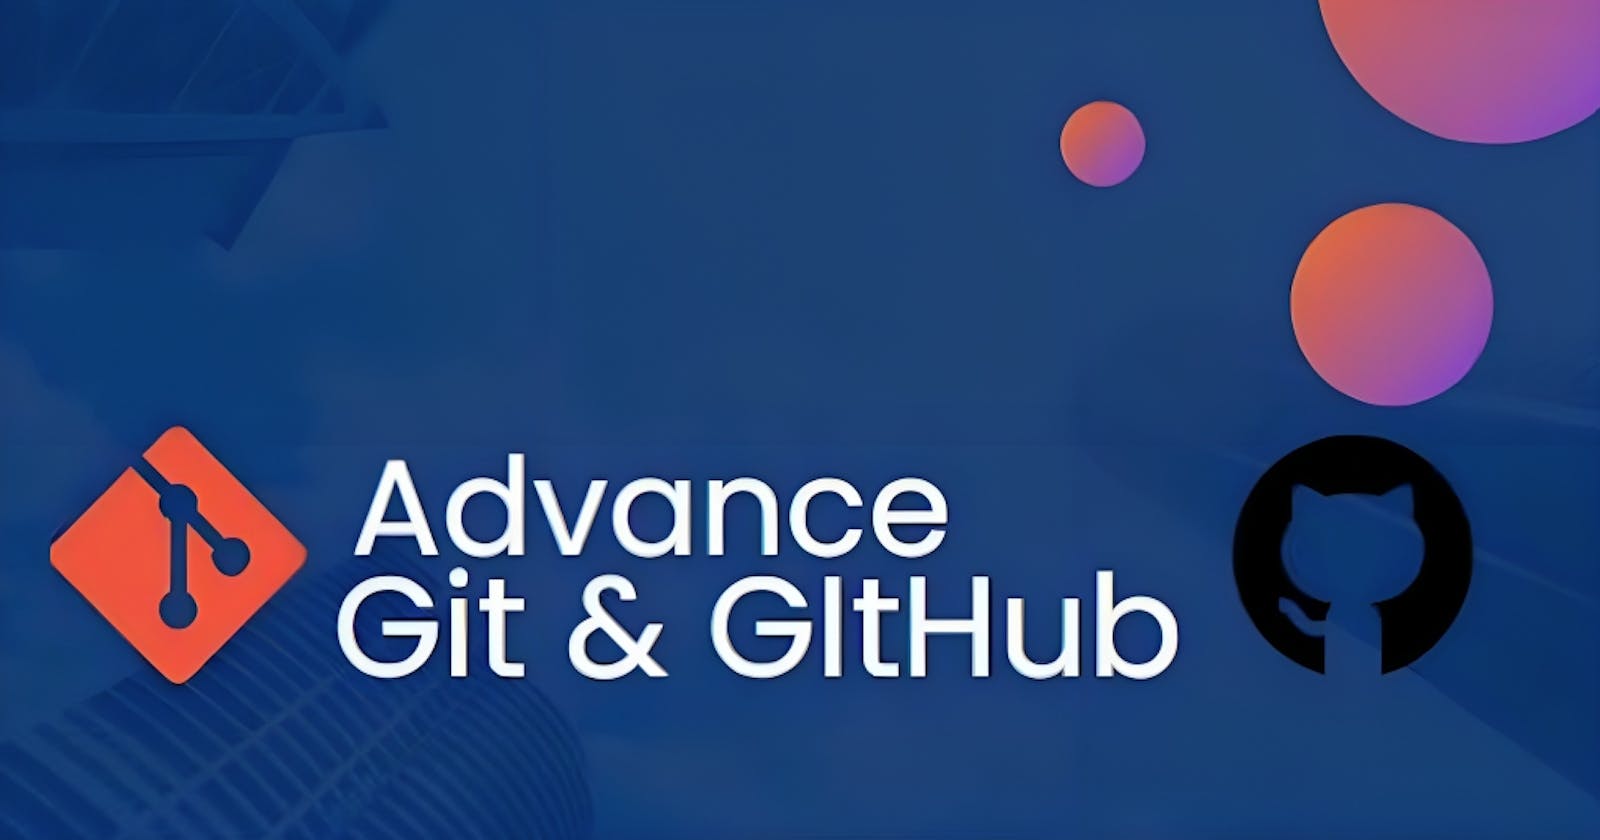 Day 9 - Advance Git & GitHub for DevOps Engineers